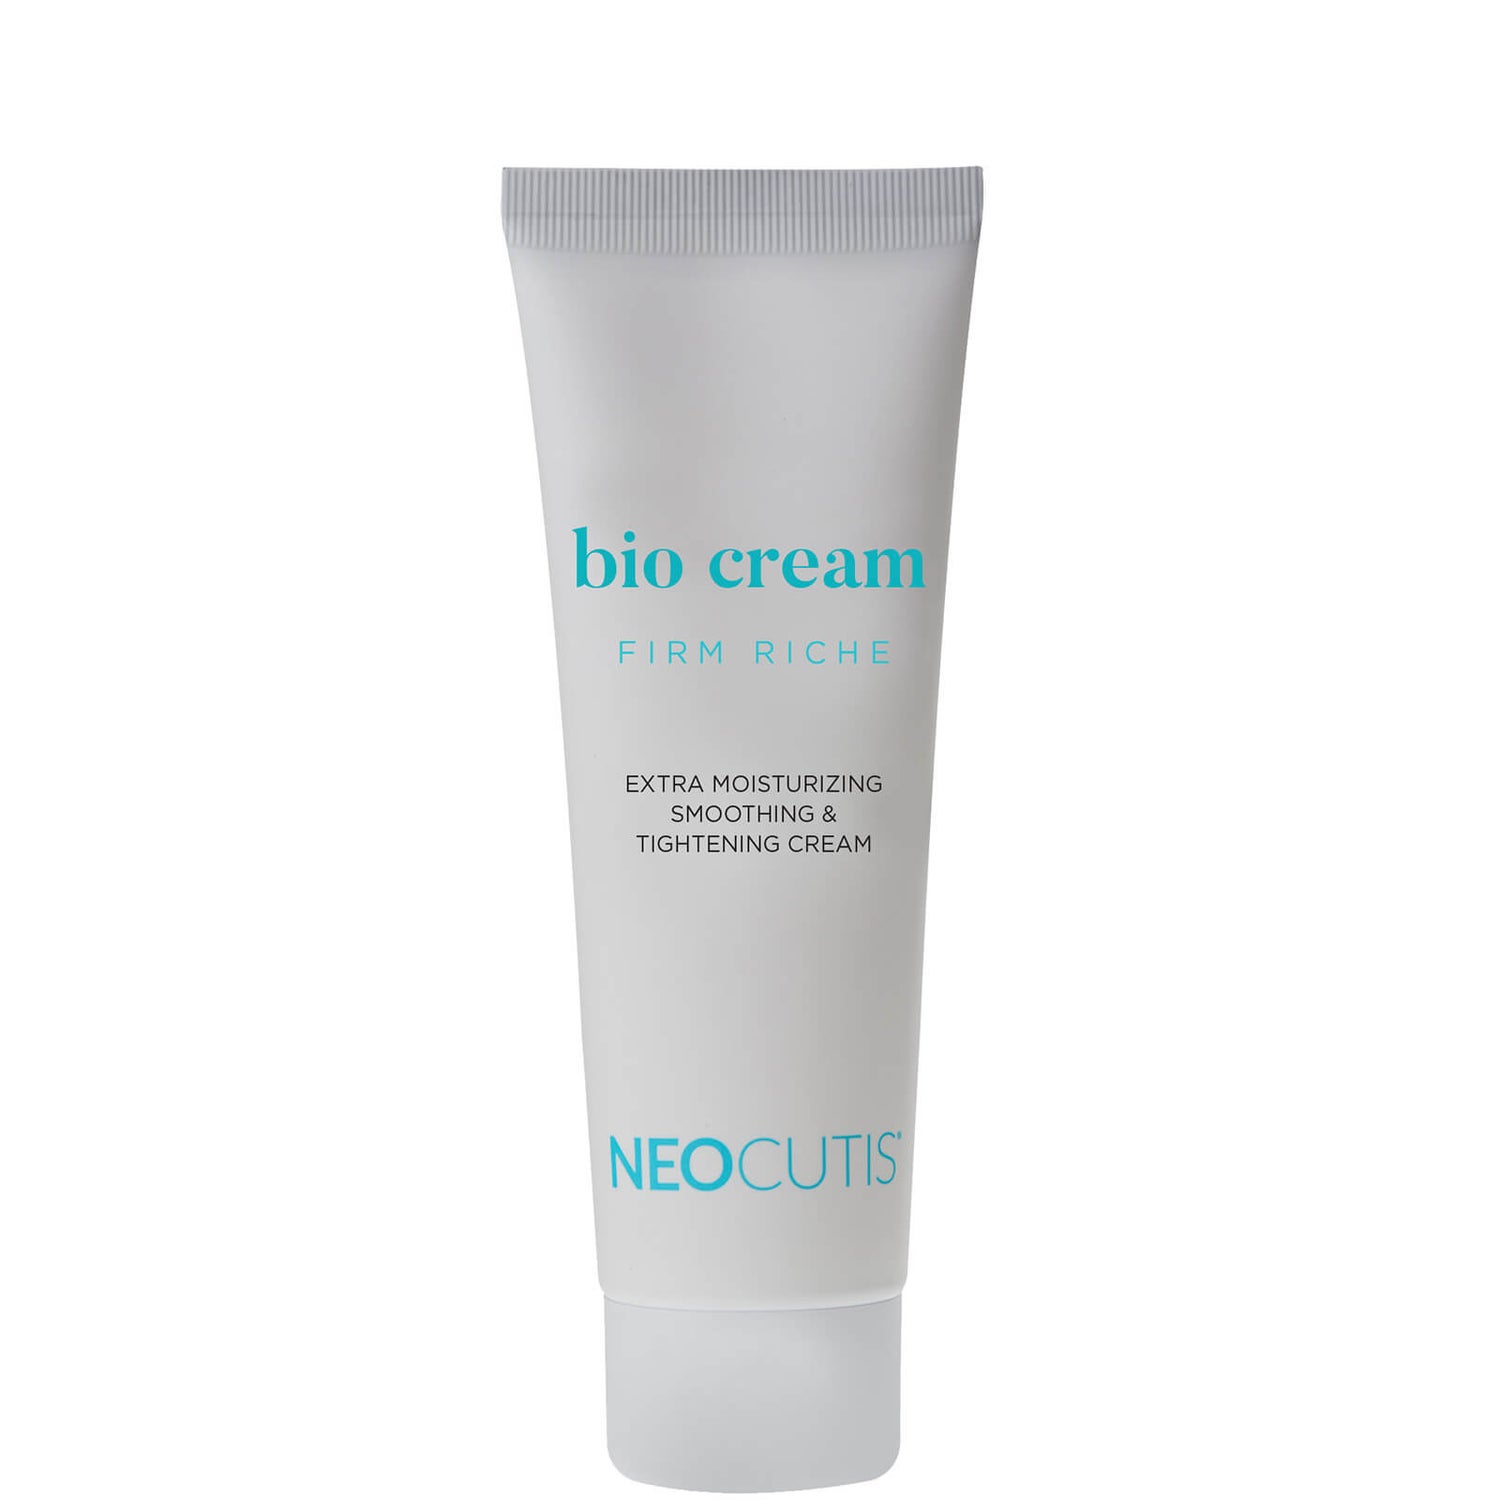 Neocutis Bio Cream Firm Riche 4ml